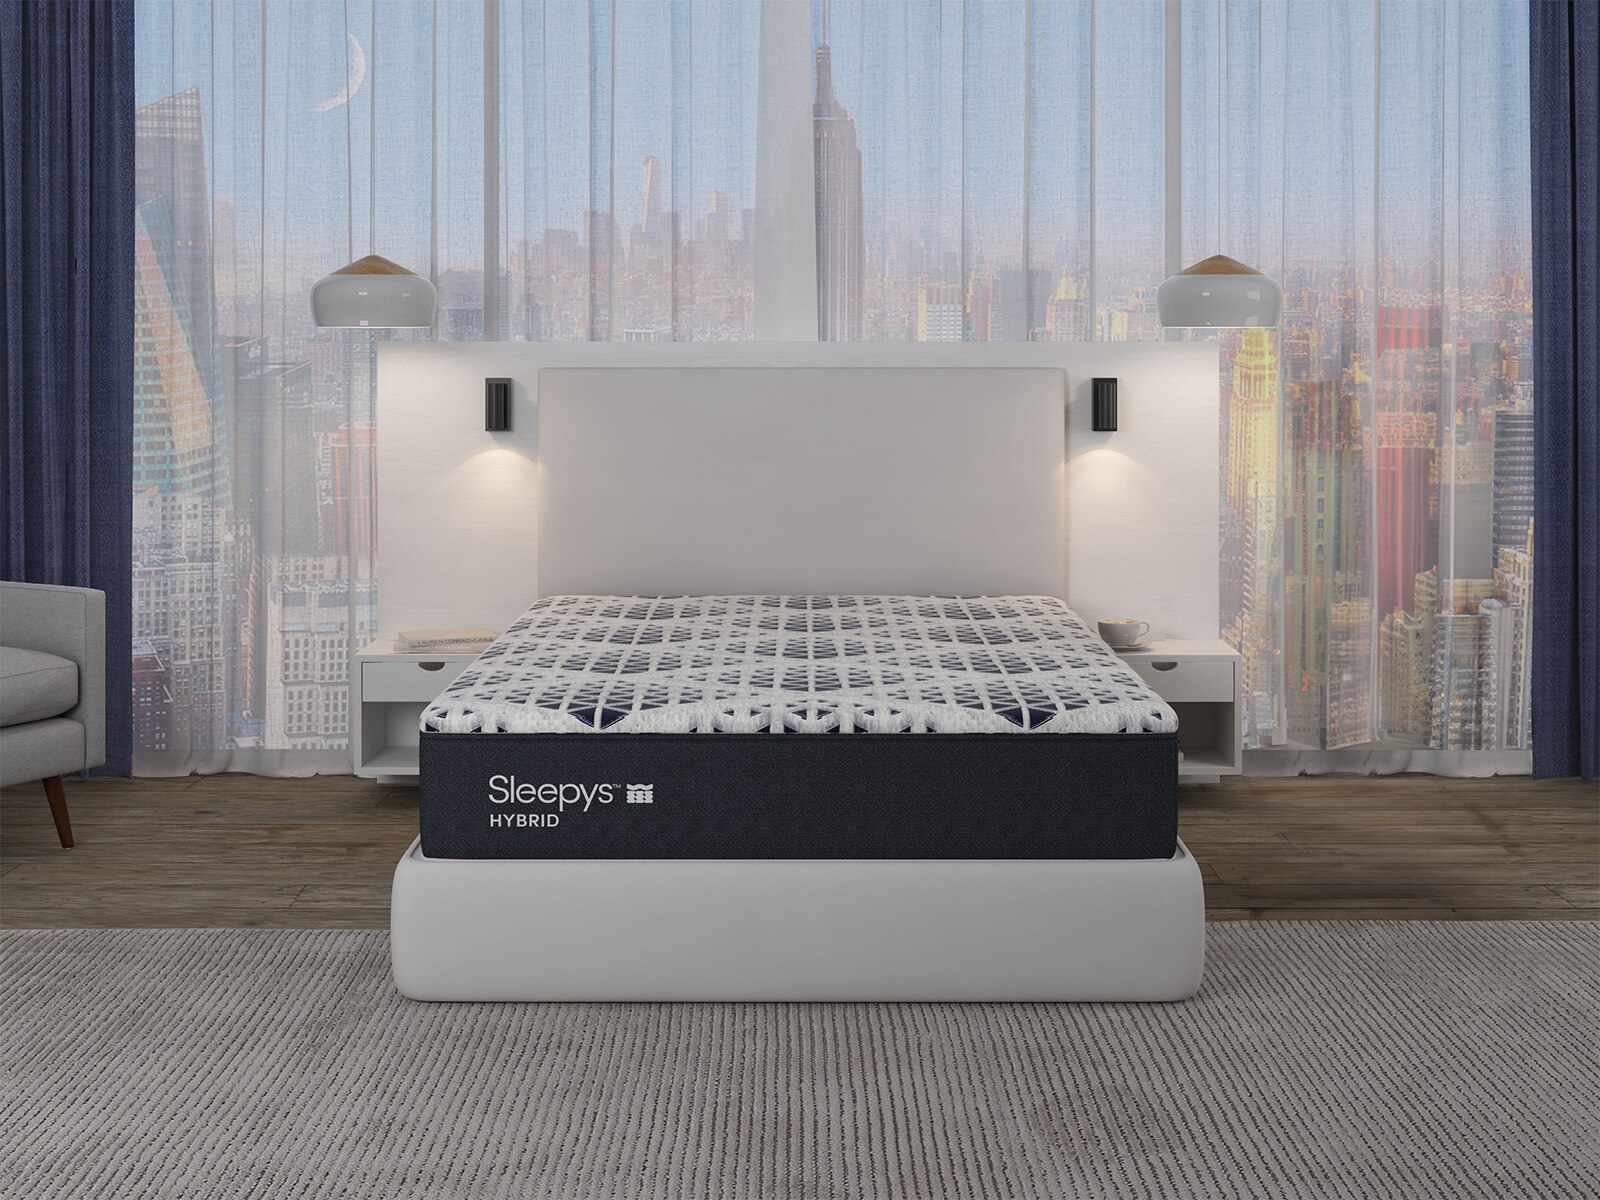 sleepys becomes mattress firm